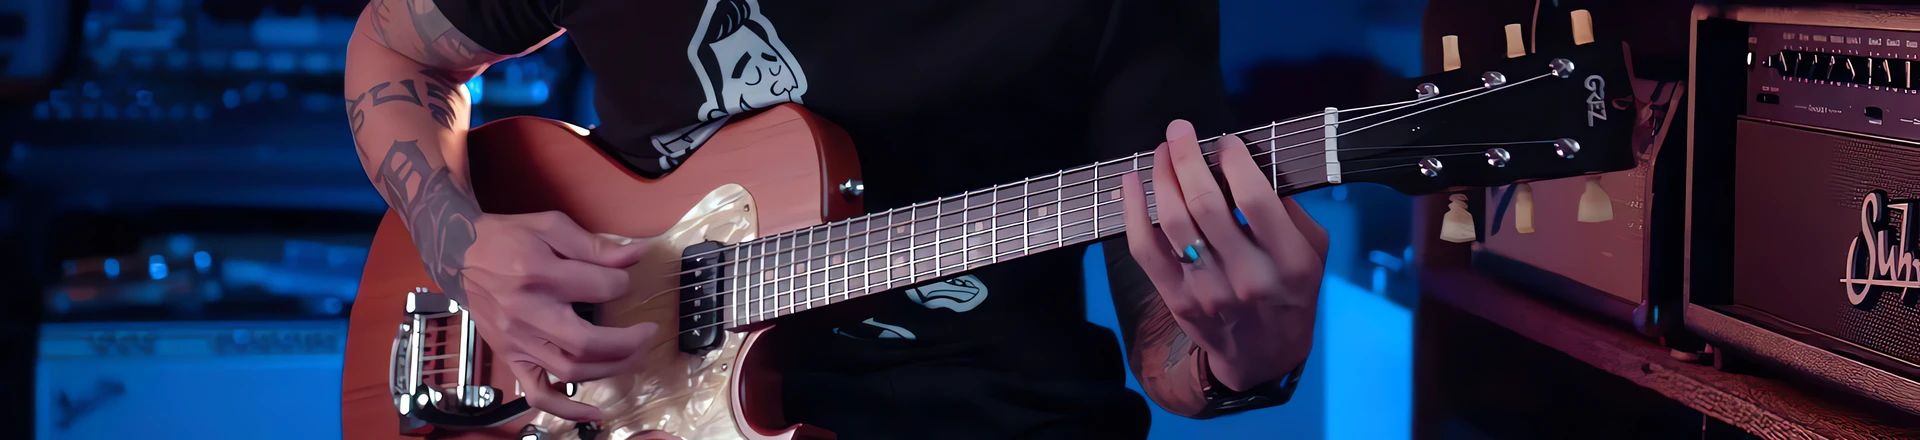 Gitara z drewna z czasów średniowiecza może być Twoja! 